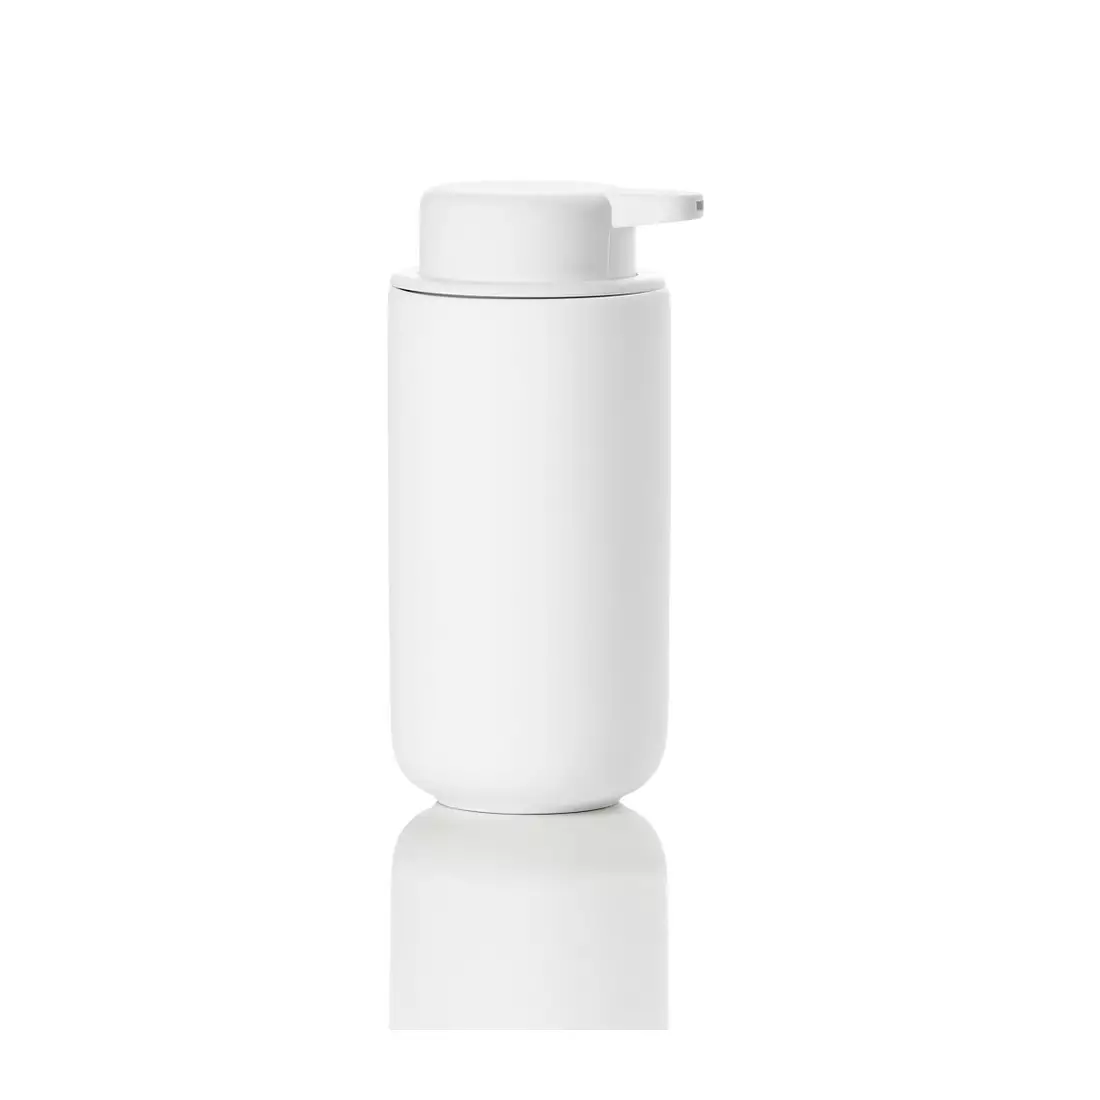 ZONE DENMARK UME soap dispenser 450 ml white